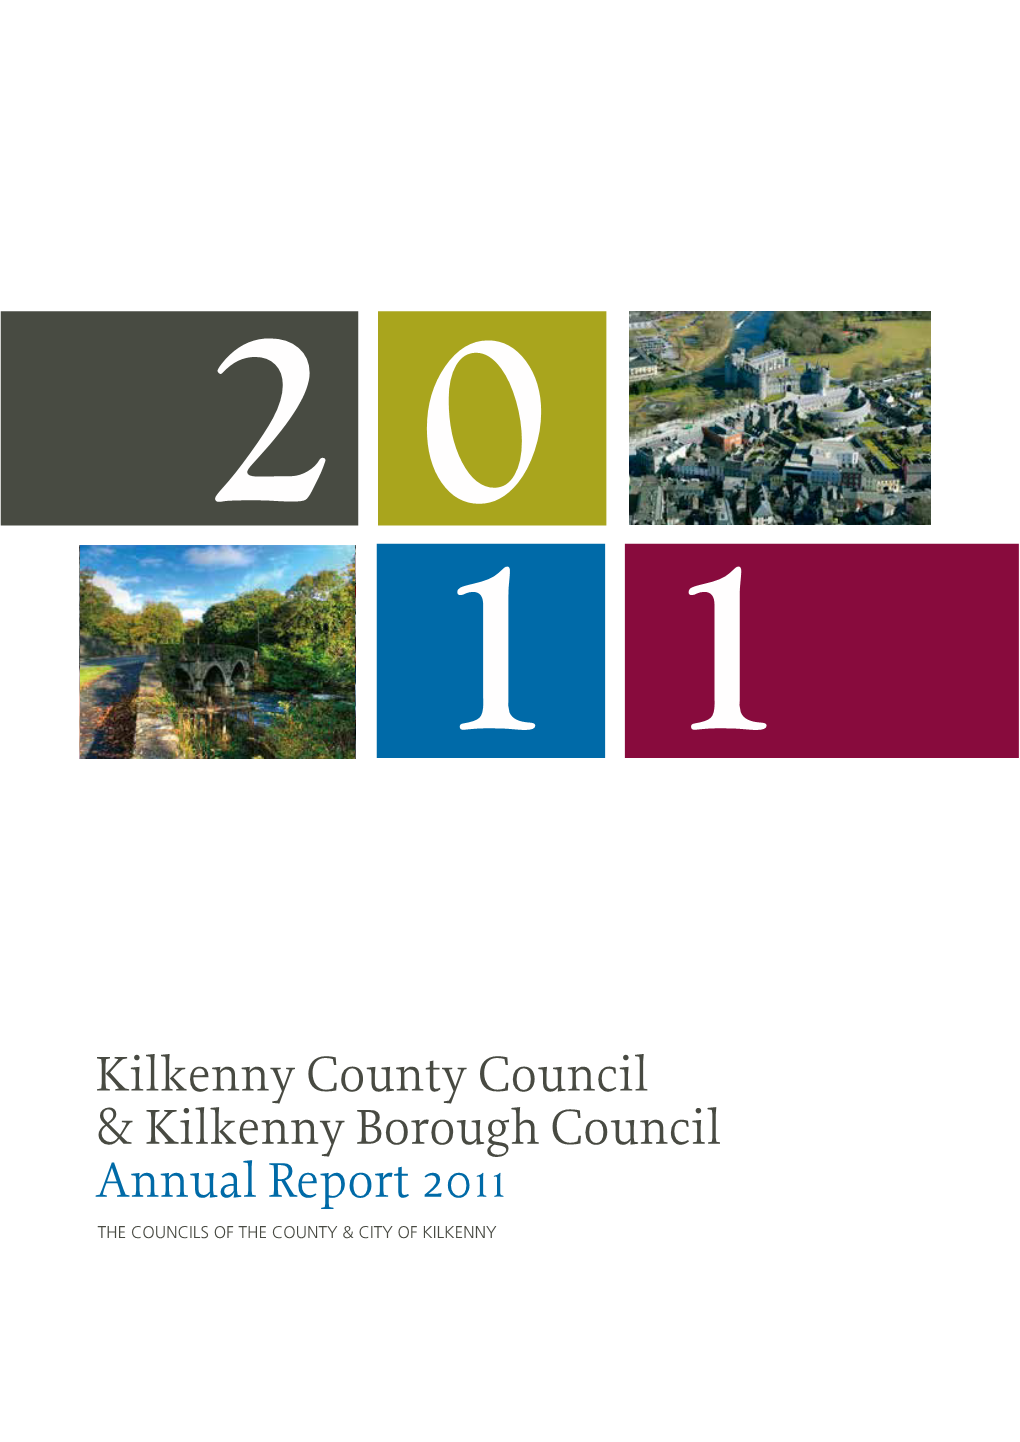 Annual Report 2011.Pdf (Size 1.8